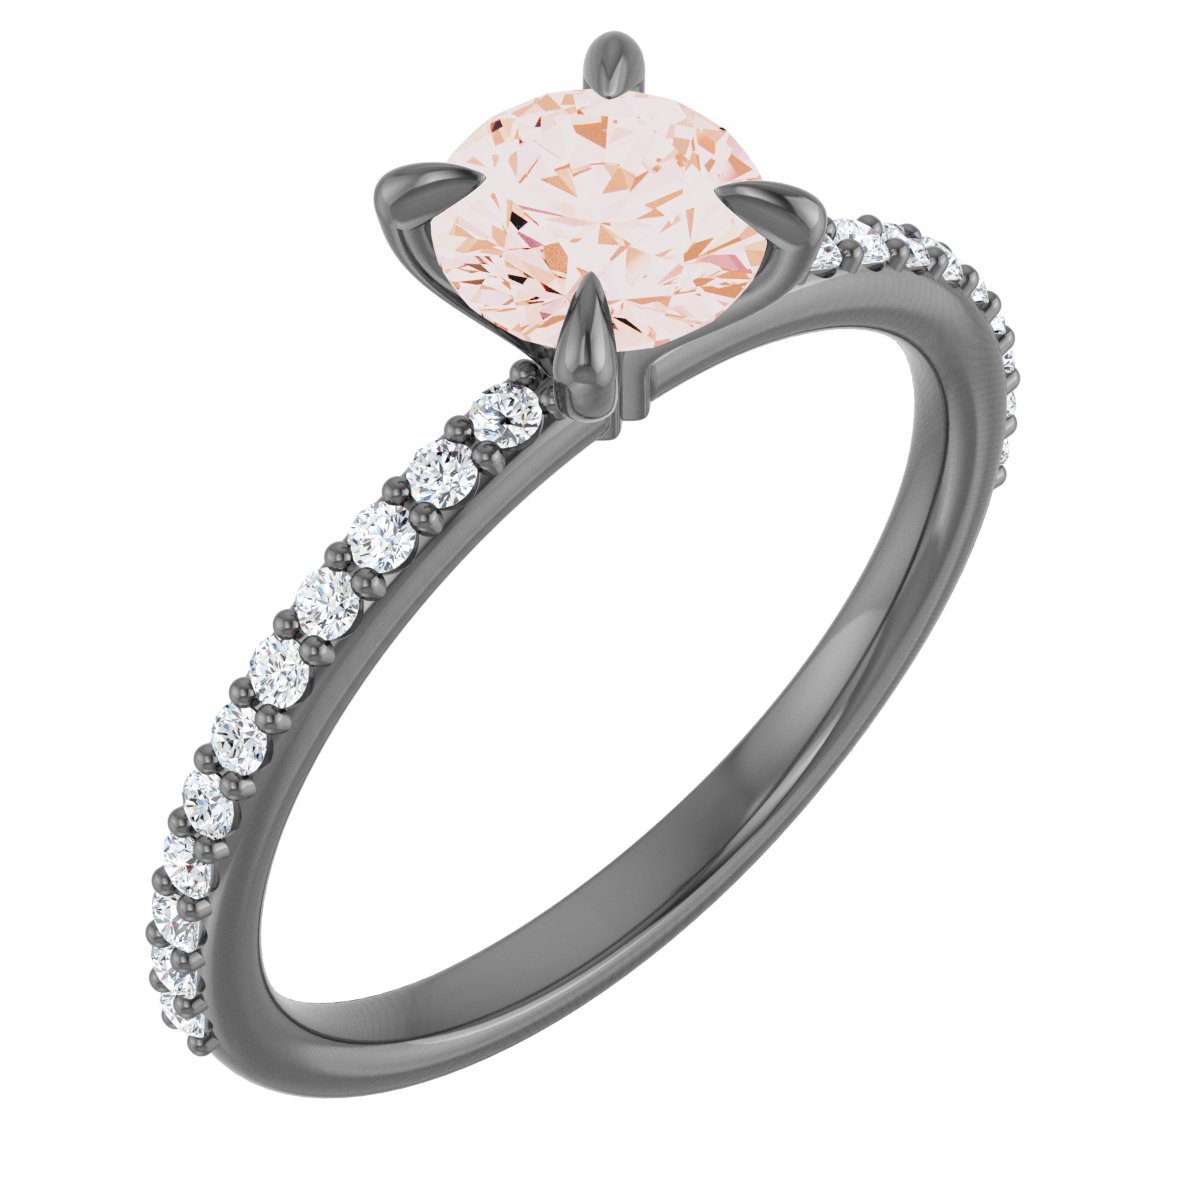 14K Rose 6 mm Round Forever One™ Moissanite & 1/5 CTW Diamond Engagement Ring